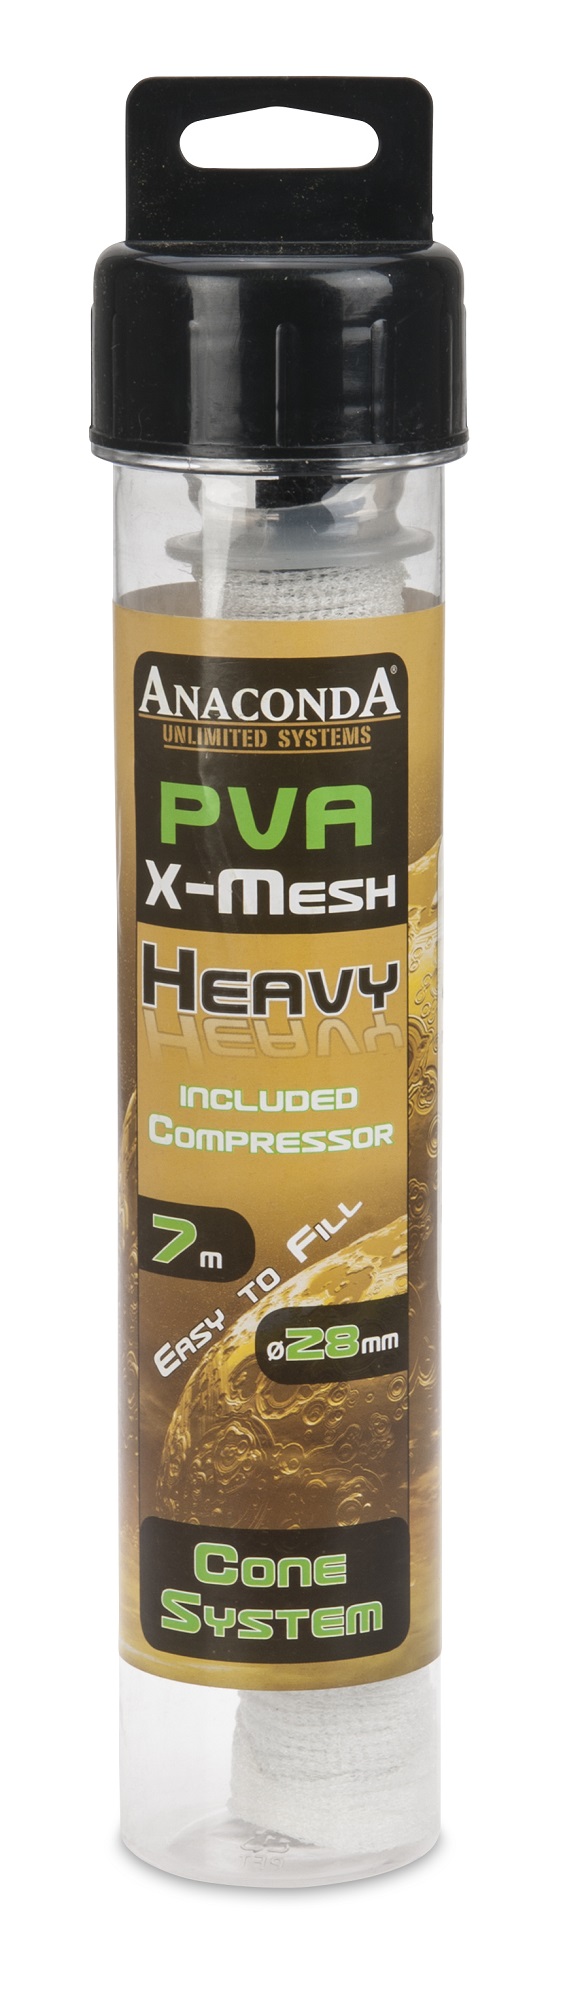 Anaconda PVA X-Mesh Cone & Compressor System 7m